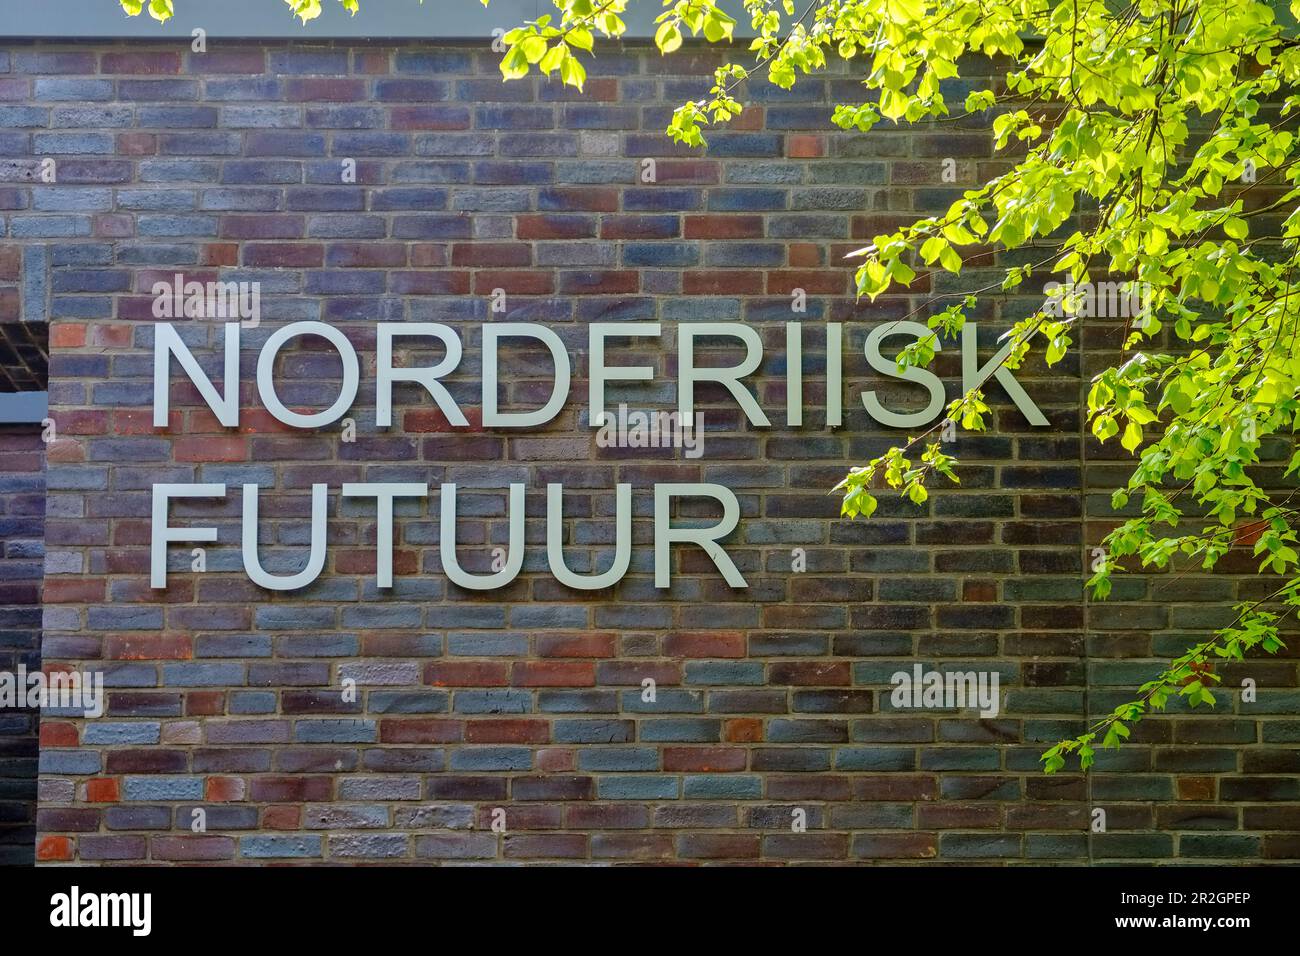 Nordfriisk Institute in Bredstedt, North Friesland, North Sea Coast, Schleswig Holstein, Germany, Europe Stock Photo